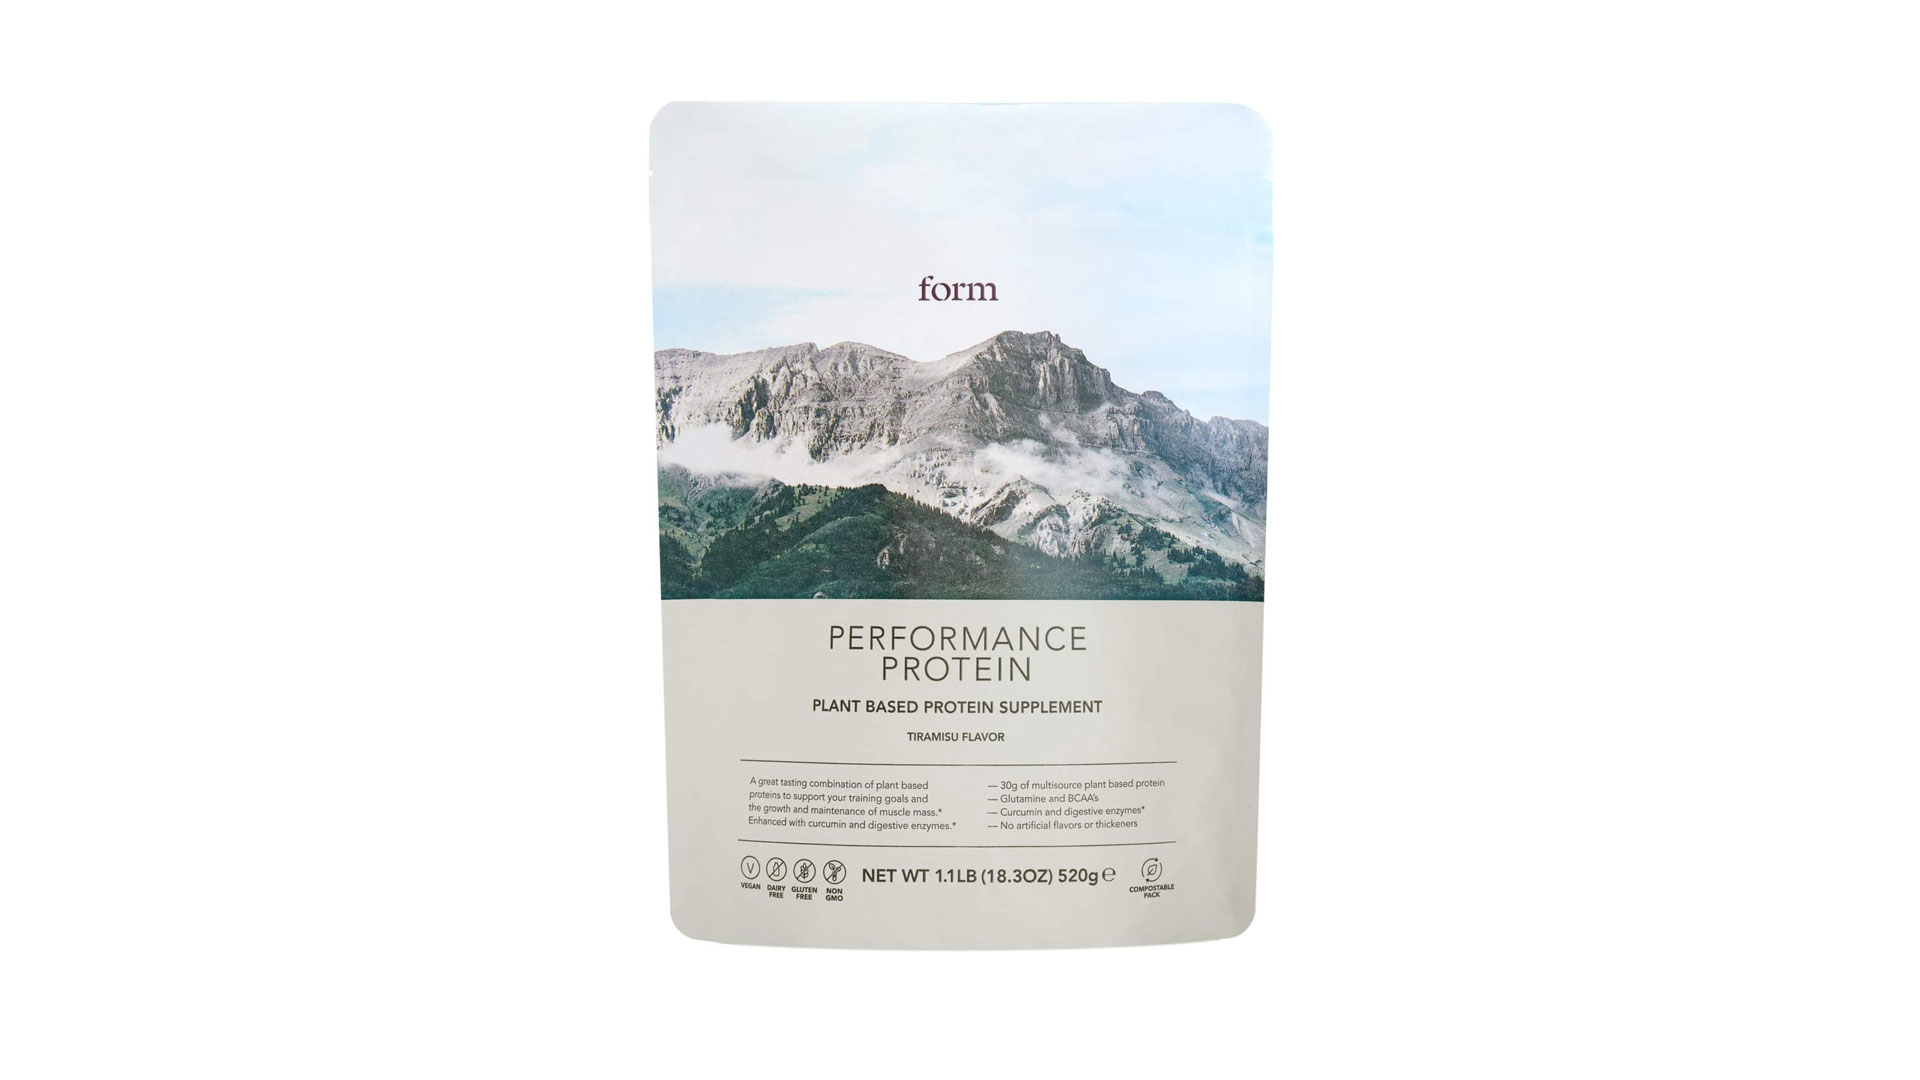 Best protein powder: Form peformance protein